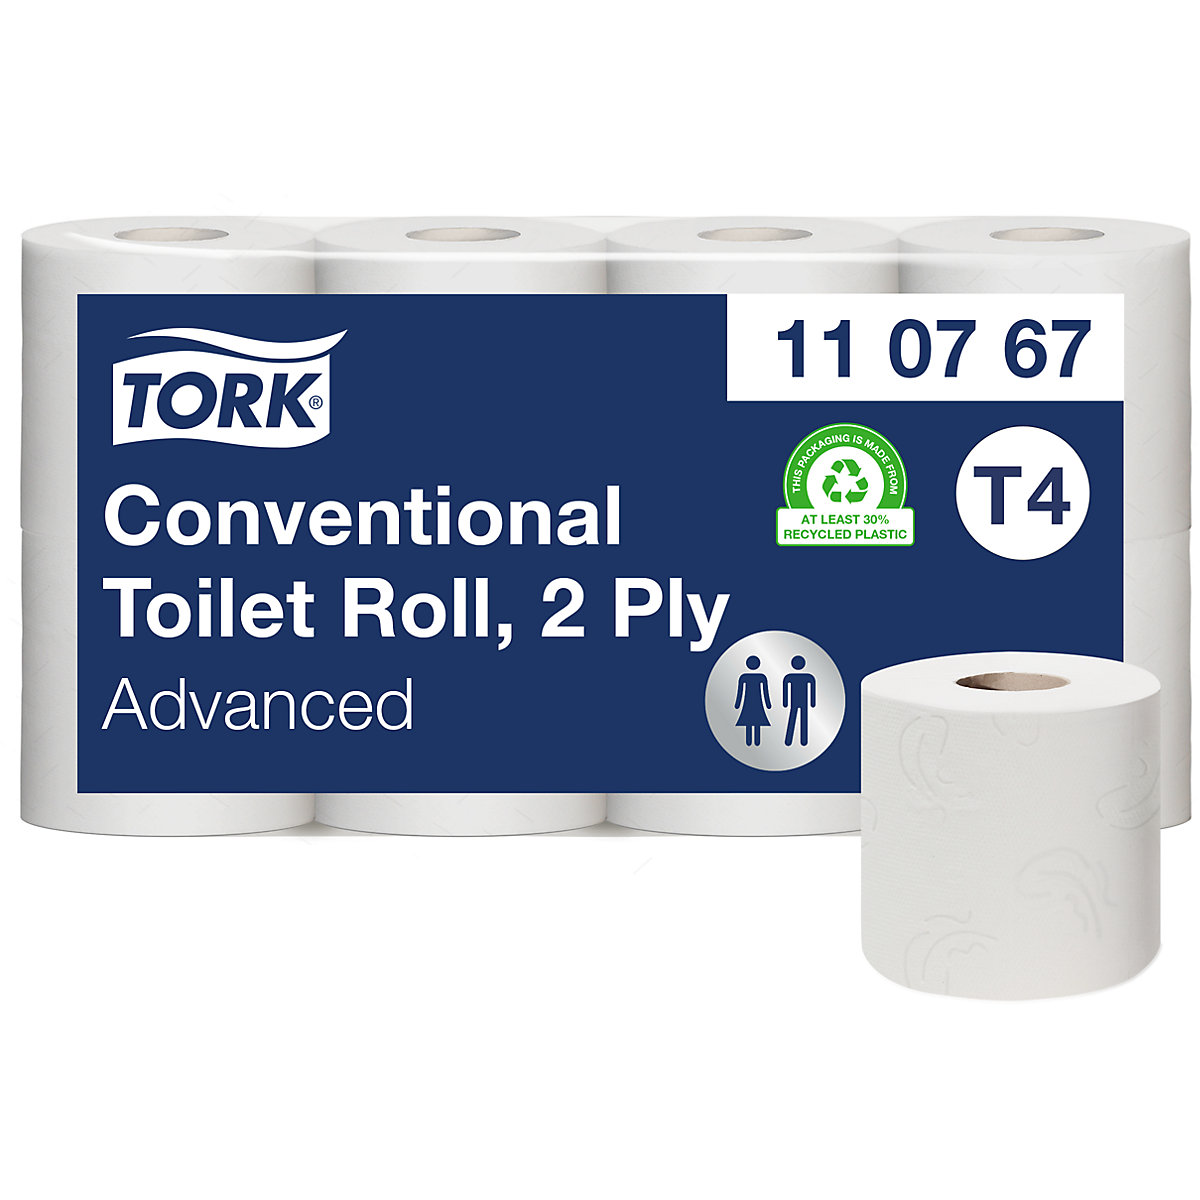 Malé role toaletního papíru, role pro domácnost - TORK